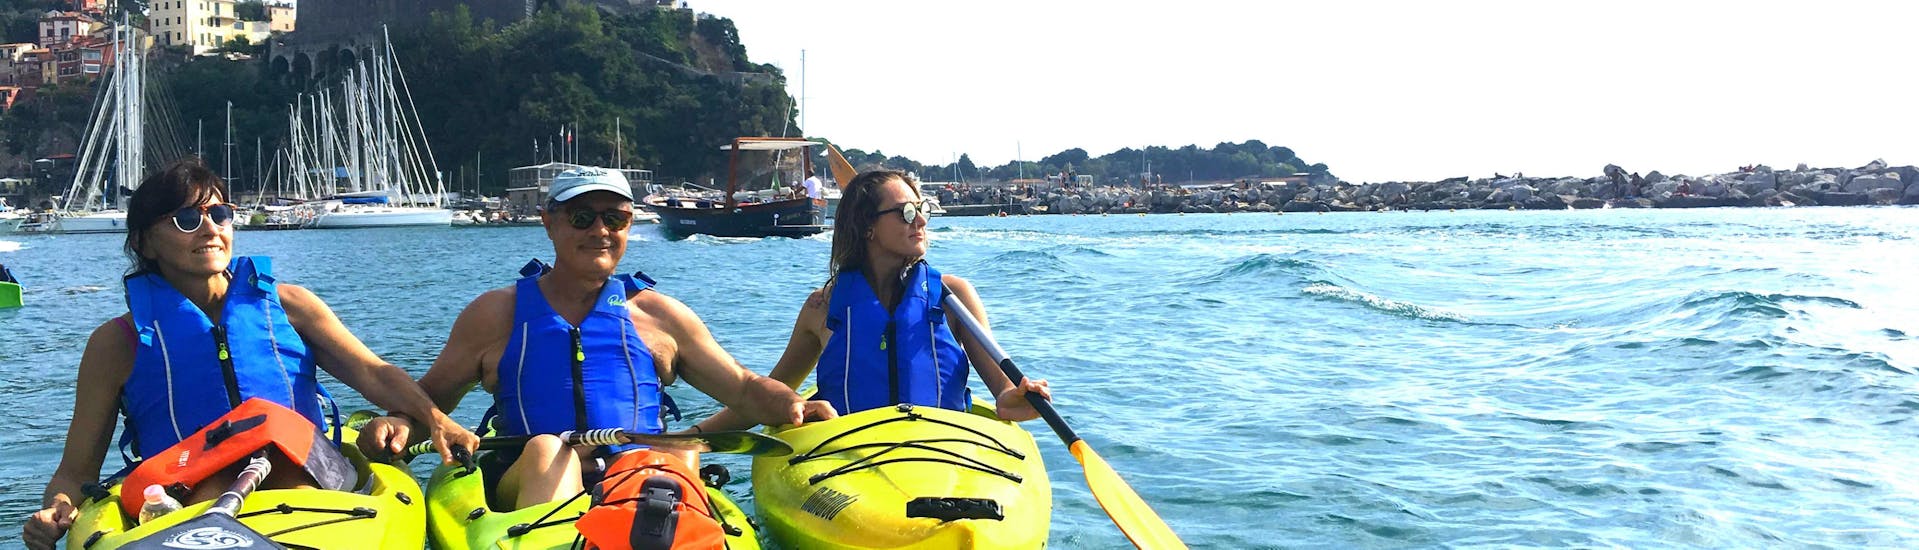 Kayak Tour a Lerici.